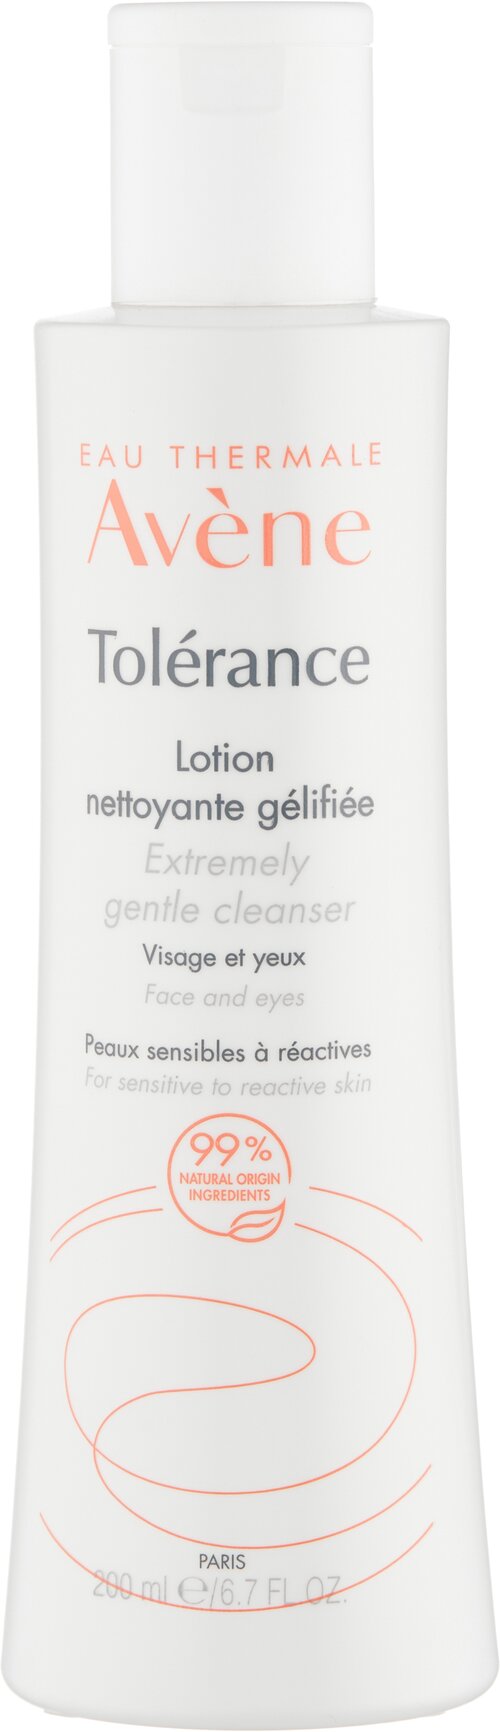 Avene, Tolerance Мягкий очищающий лосьон для сухой и чувствительной кожи лица, 200 мл